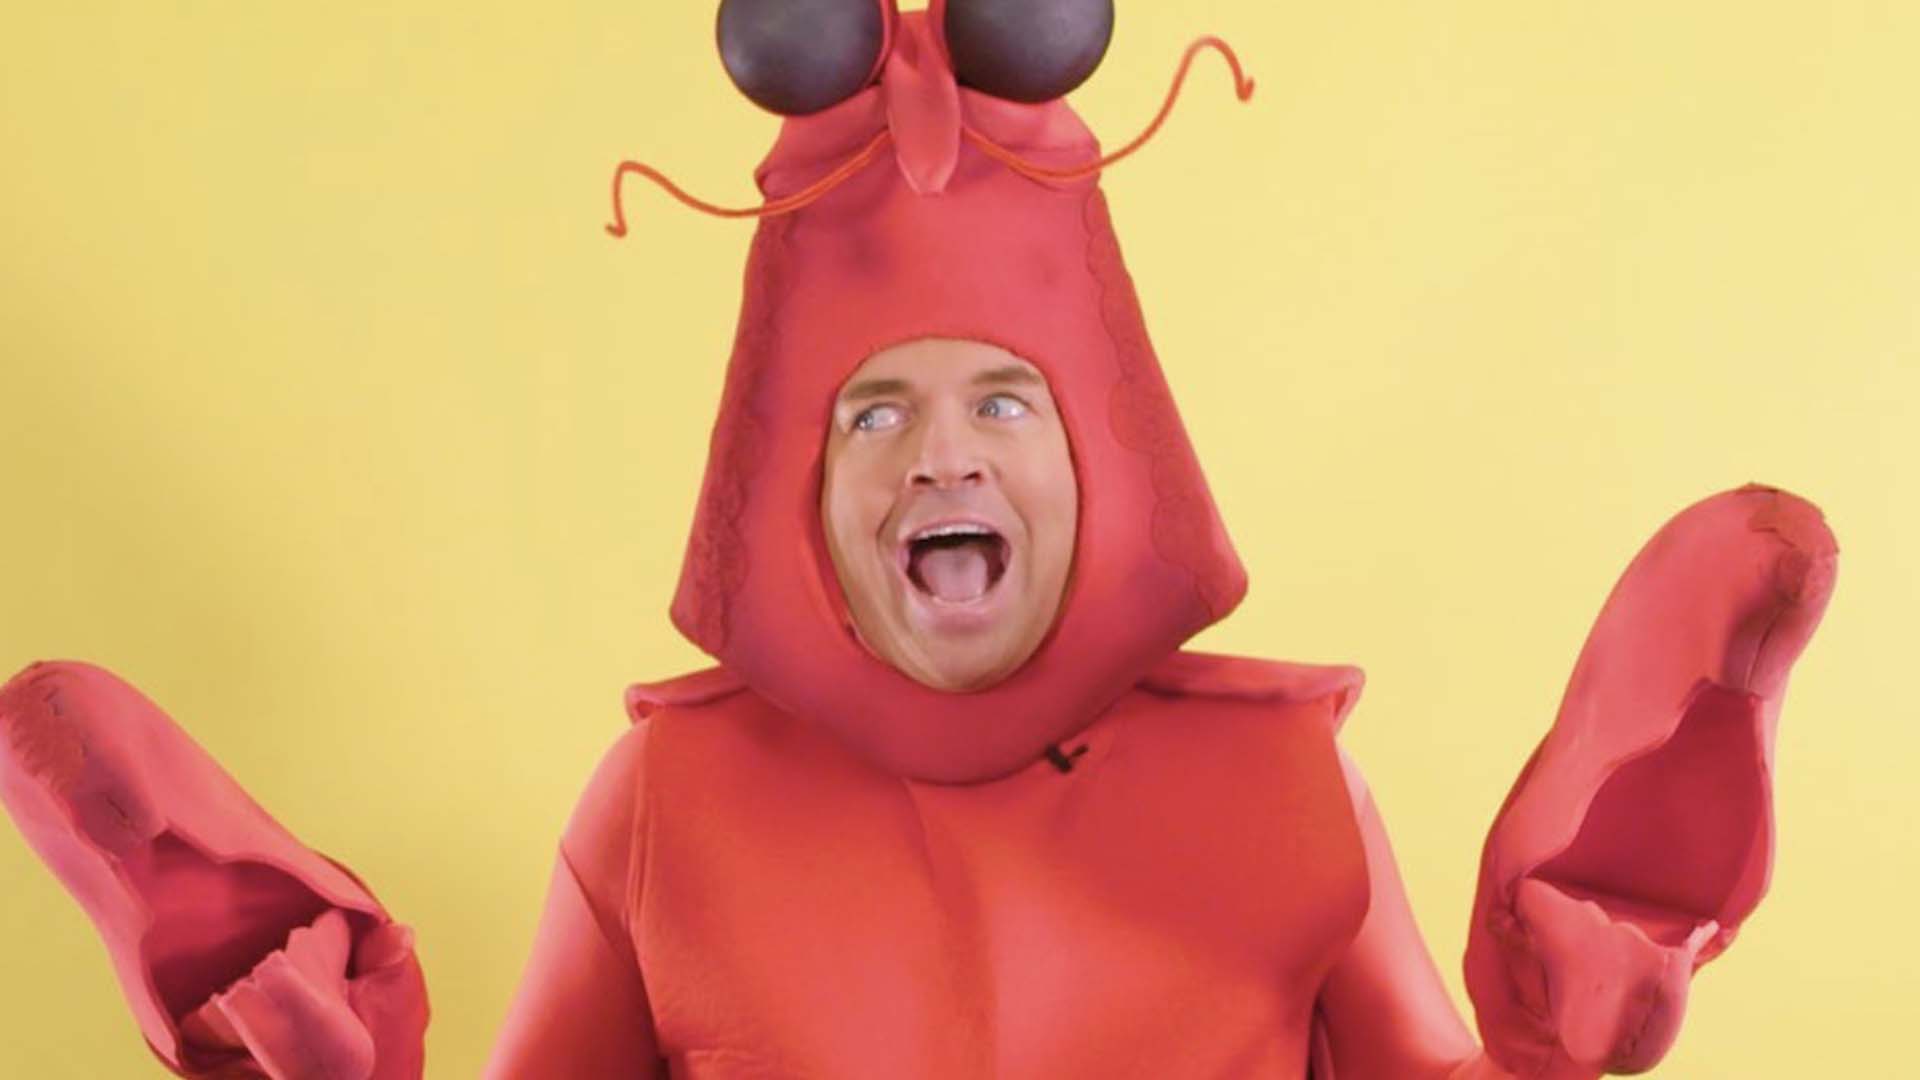 Stephen Mulhern dressed as a lobster